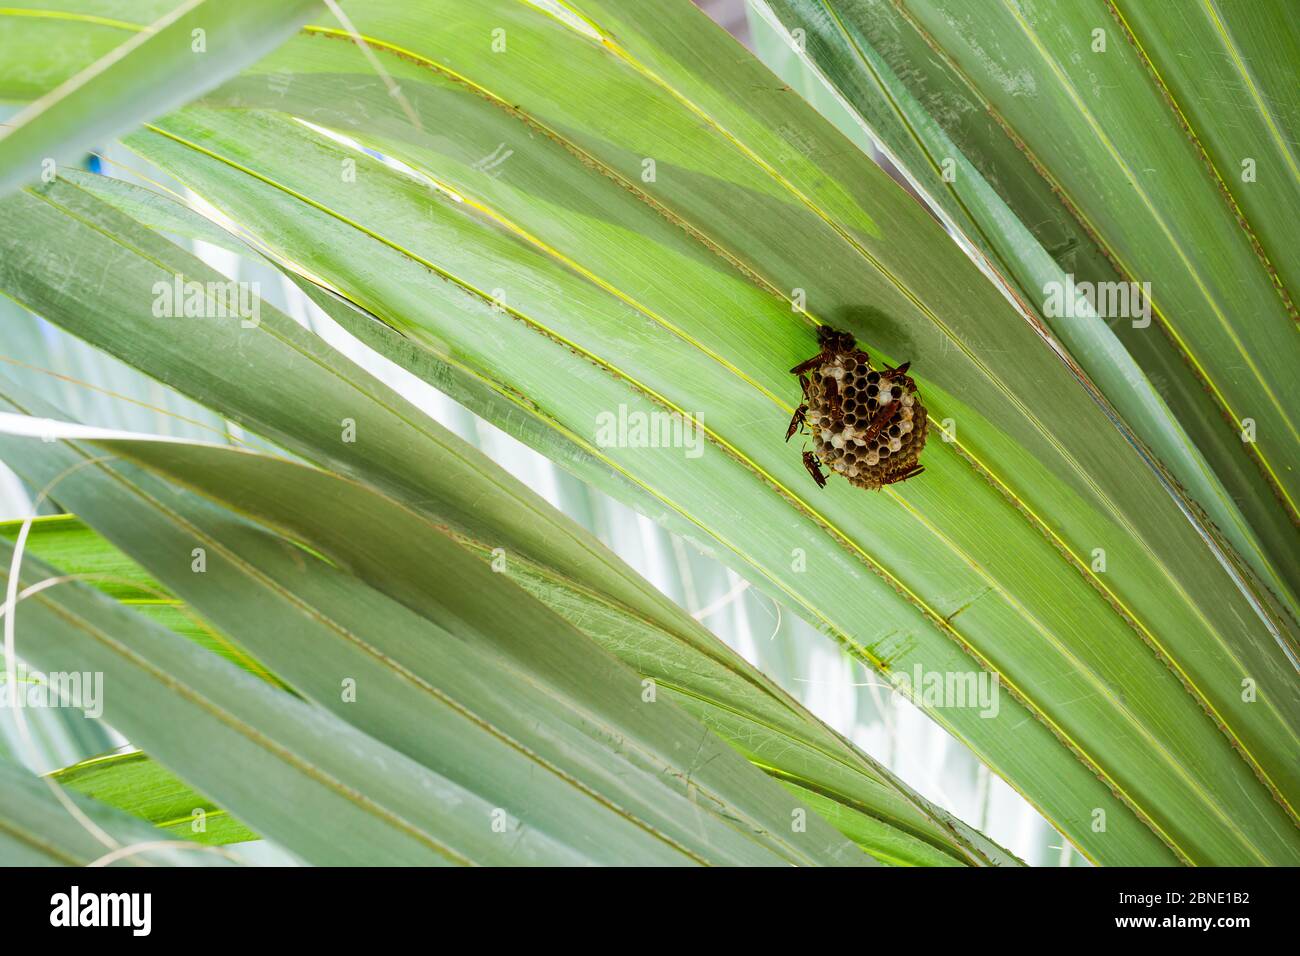 Wespennest ist auf grünen Palmenblättern. Polistes carnifex ist eine neotropische Vespidwespe, die für ihren extrem schmerzhaften und potenten Stachel bekannt ist Stockfoto